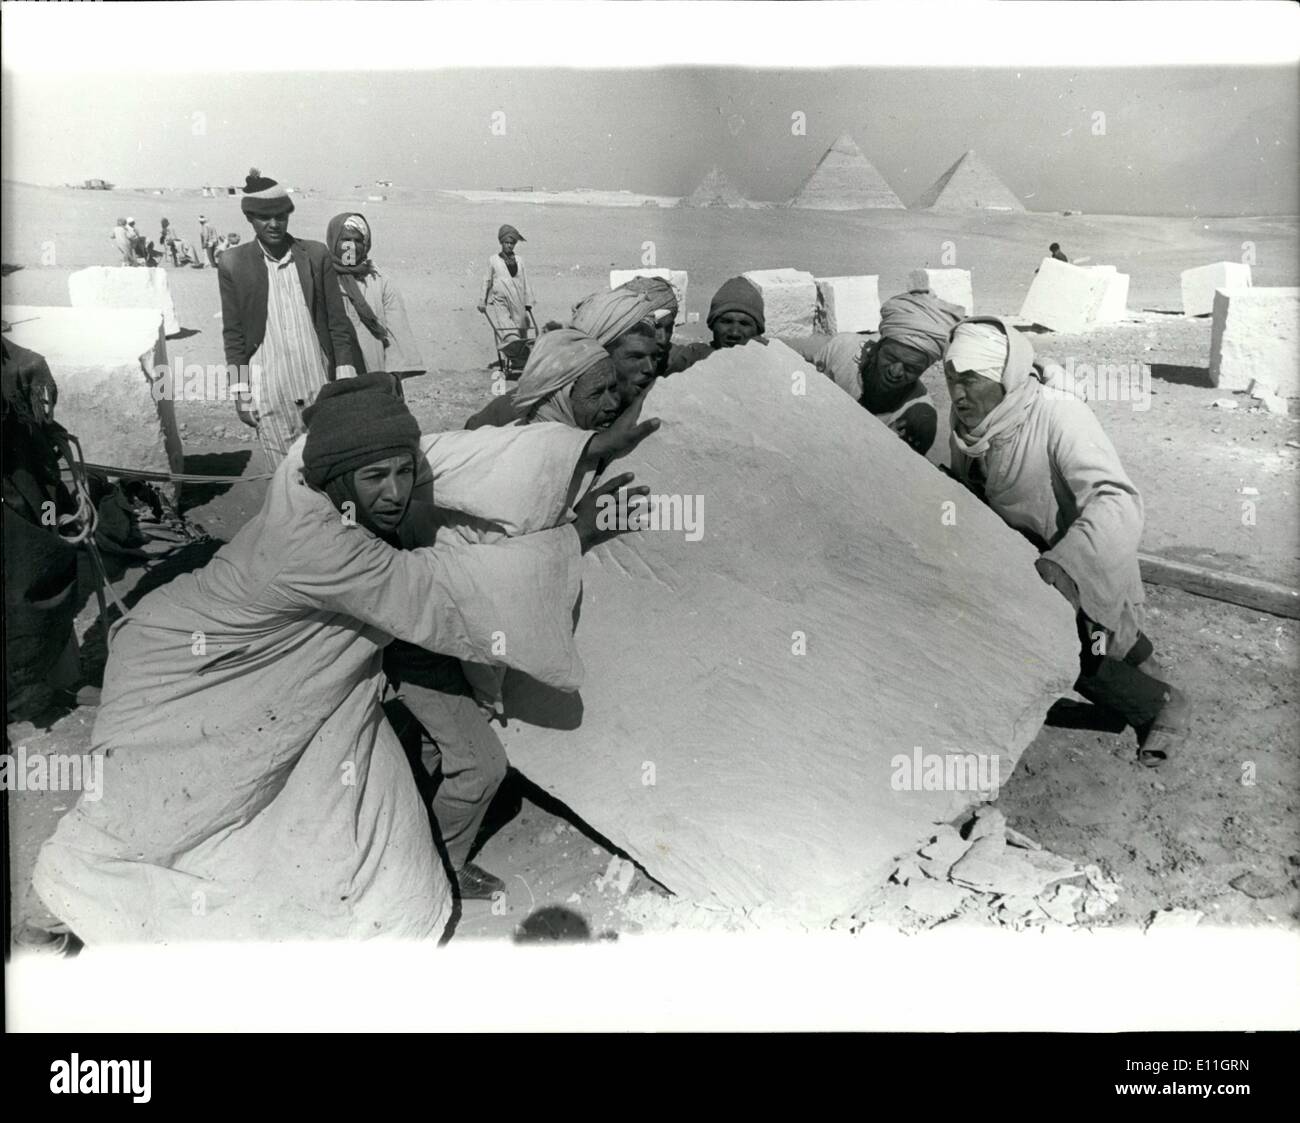 2. Februar 1978 - japanische Mini Pyramide In Ägypten A Team von Archäologen sind um eine Pyramide in der ägyptischen Wüste in einem Versuch zu entdecken, wie die alten Ägypter die Cheops-Pyramide, die mehr als 4.500 Jahren aufbauen konnten ein Geheimnis zu bauen, die bis heute ungelöst bleibt. Die japanische Mini Pyramiden wird voraussichtlich einen fünfzehnten Größe des Cheops, bis 10.000 Arbeitnehmer innerhalb von drei Monaten abgeschlossen, und 1 Million Dollar Kosten. Das Team verwendet primitive Methoden der alten Ägypter, Steinbeile werden verwendet, um den Stein von der anderen Seite ausschneiden, wenn Nils Stockfoto